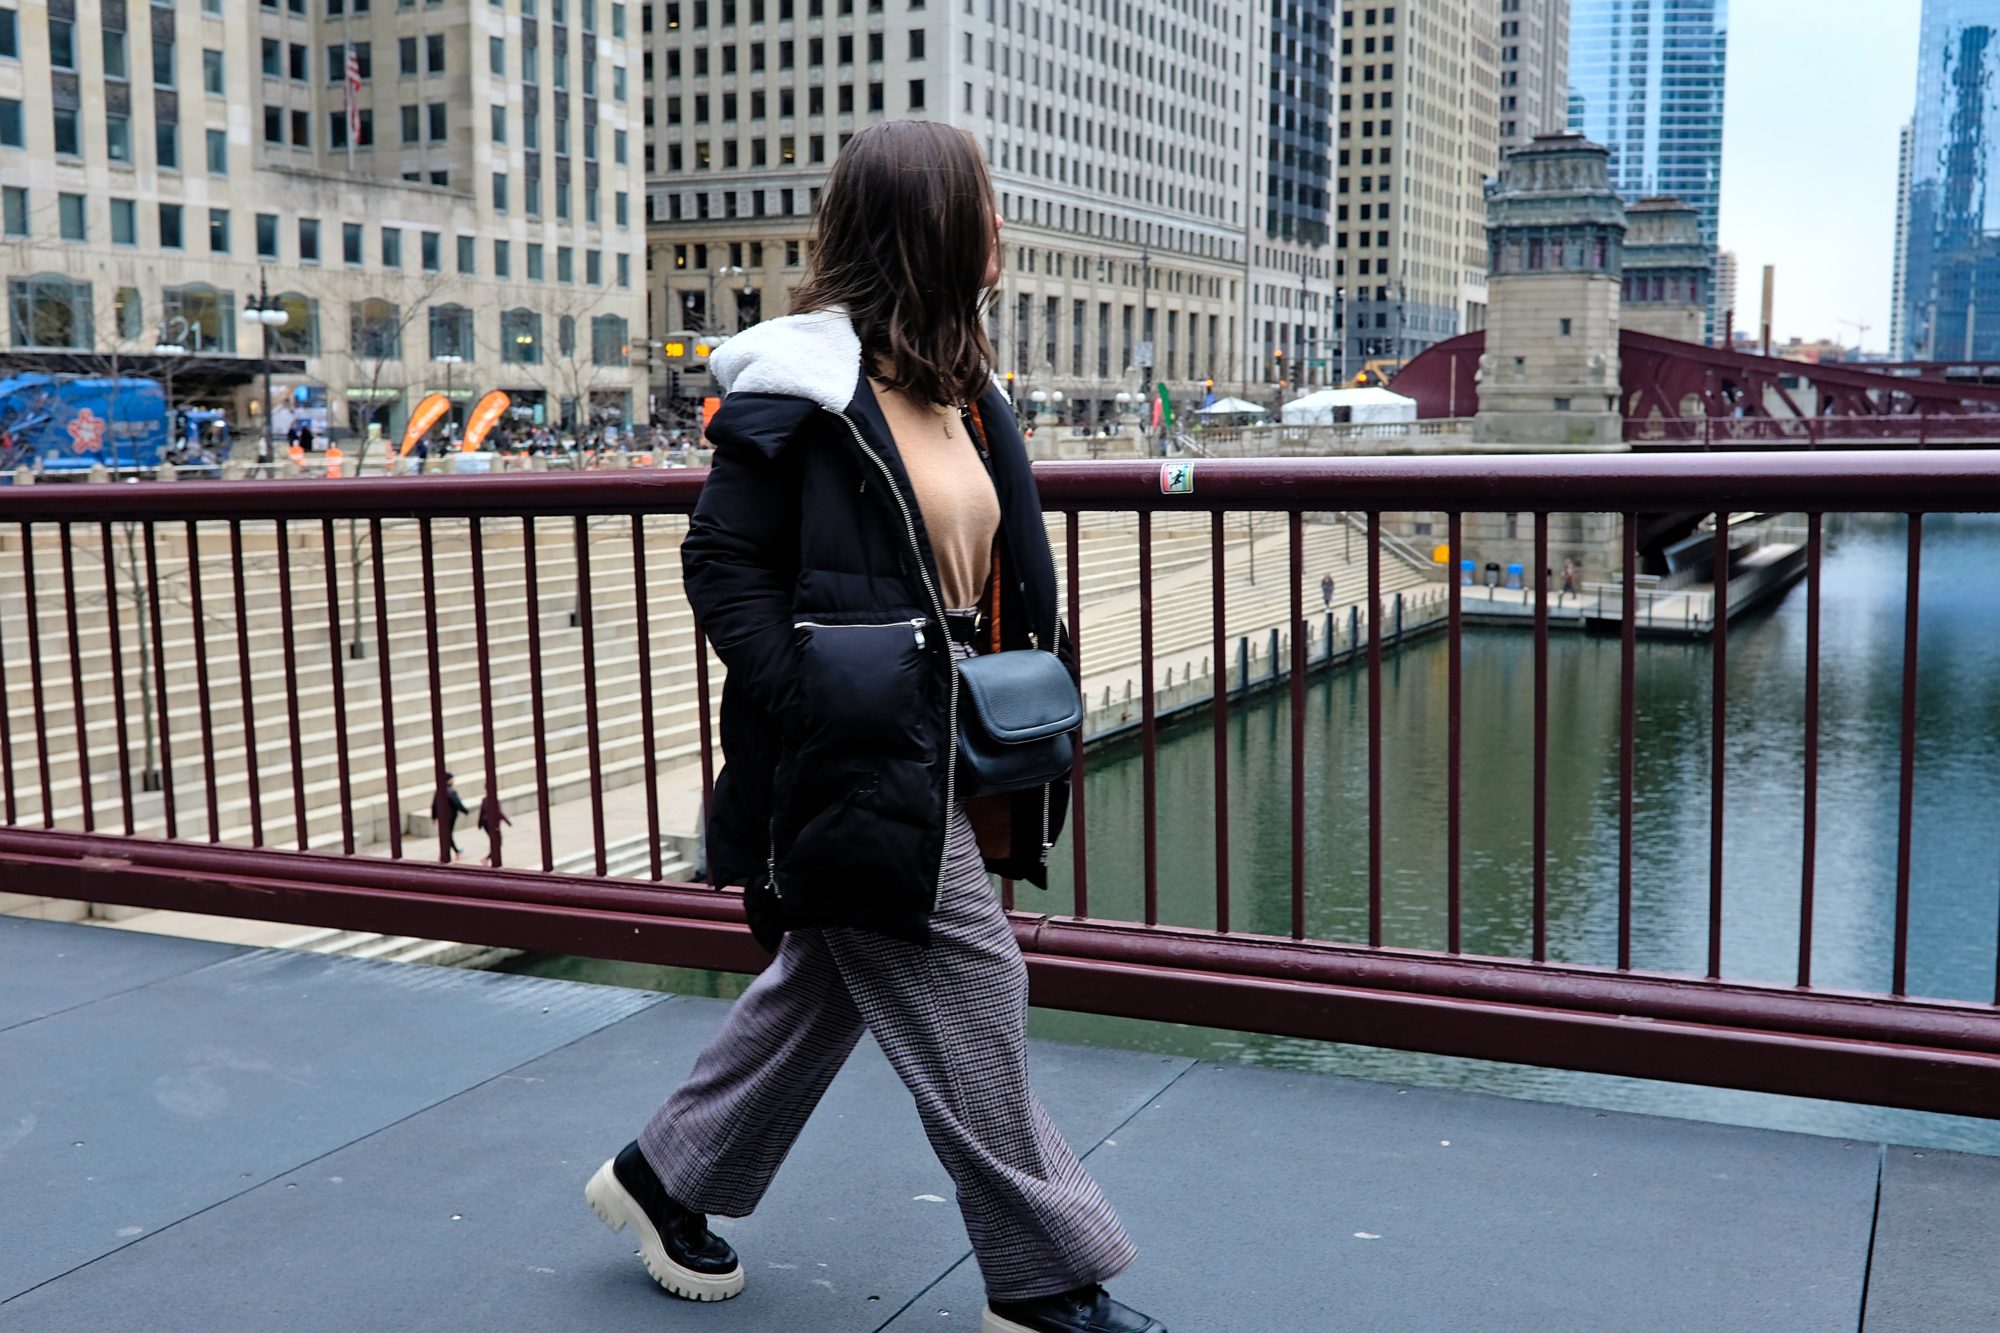 Alyssa walks on a bridge in Chicago